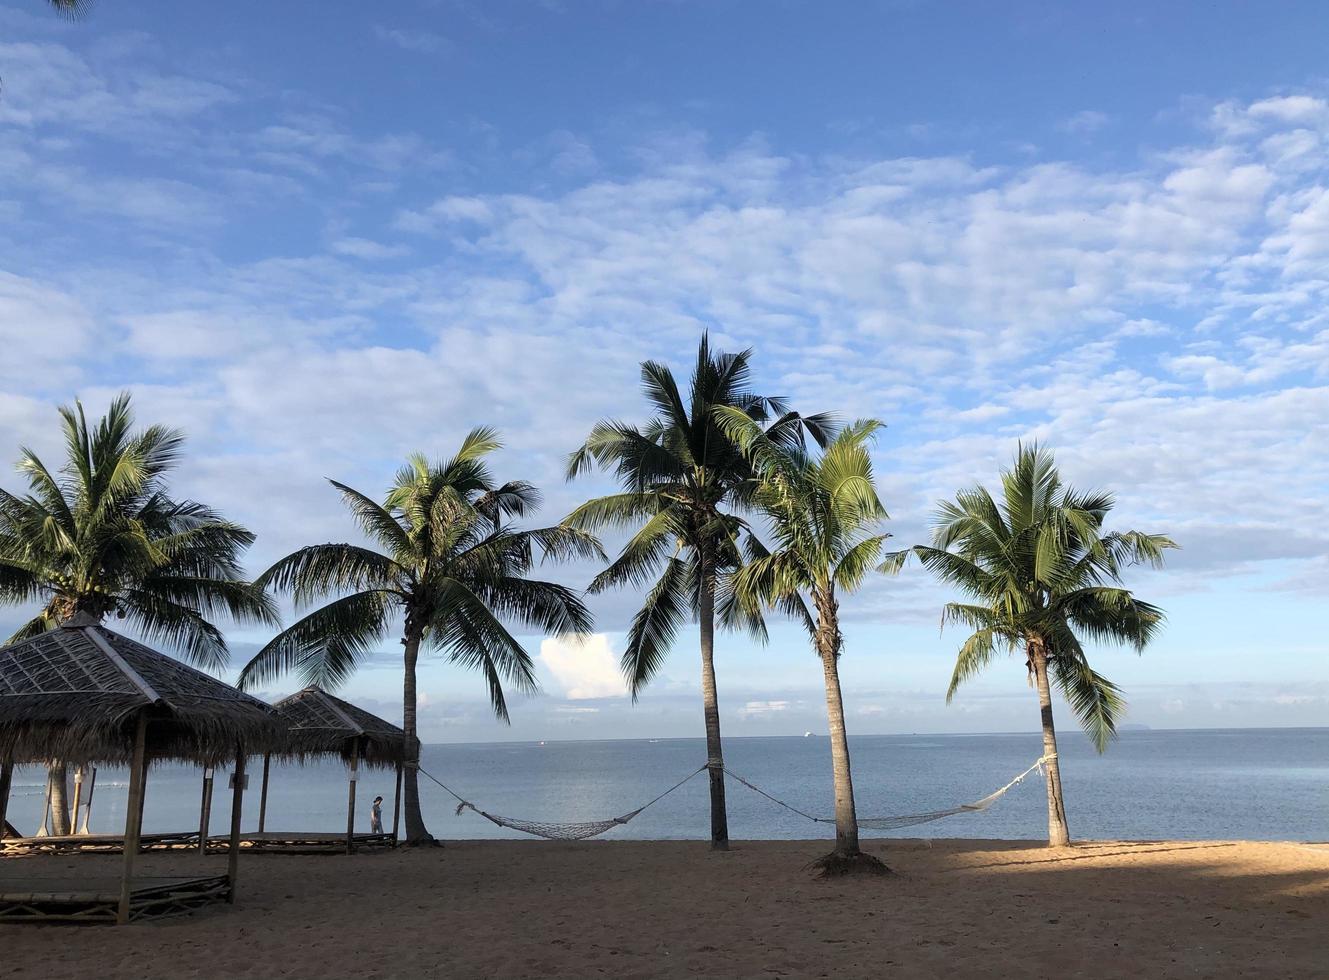 palmeras de coco en la playa fondo de verano foto